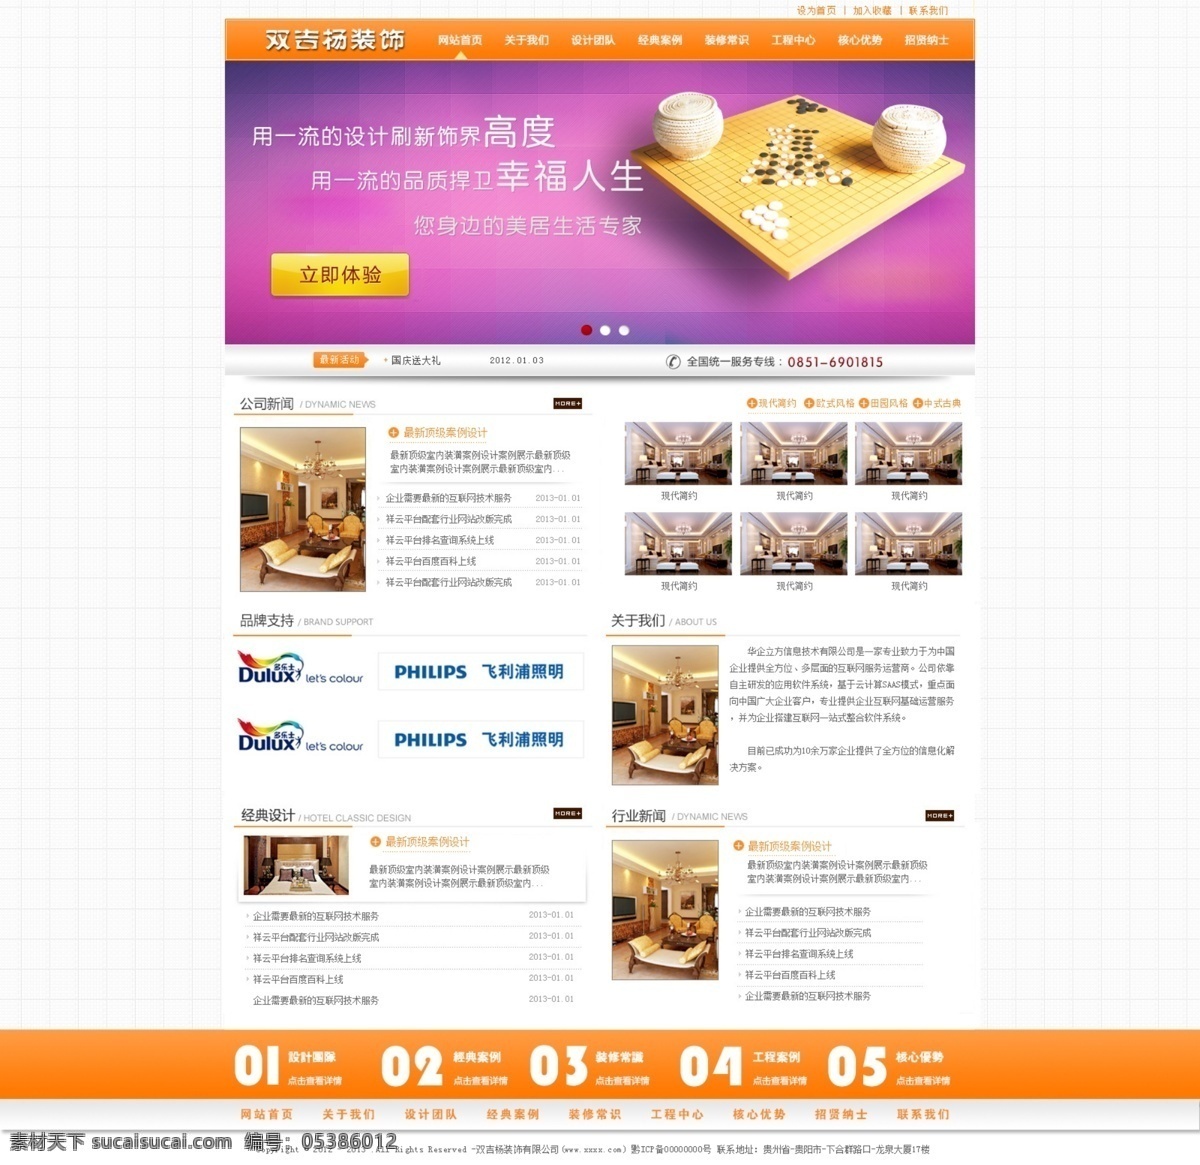 产品 企业网站 网页模板 新闻 源文件 整洁 中文模板 装修 白色 视觉 模板下载 网页素材